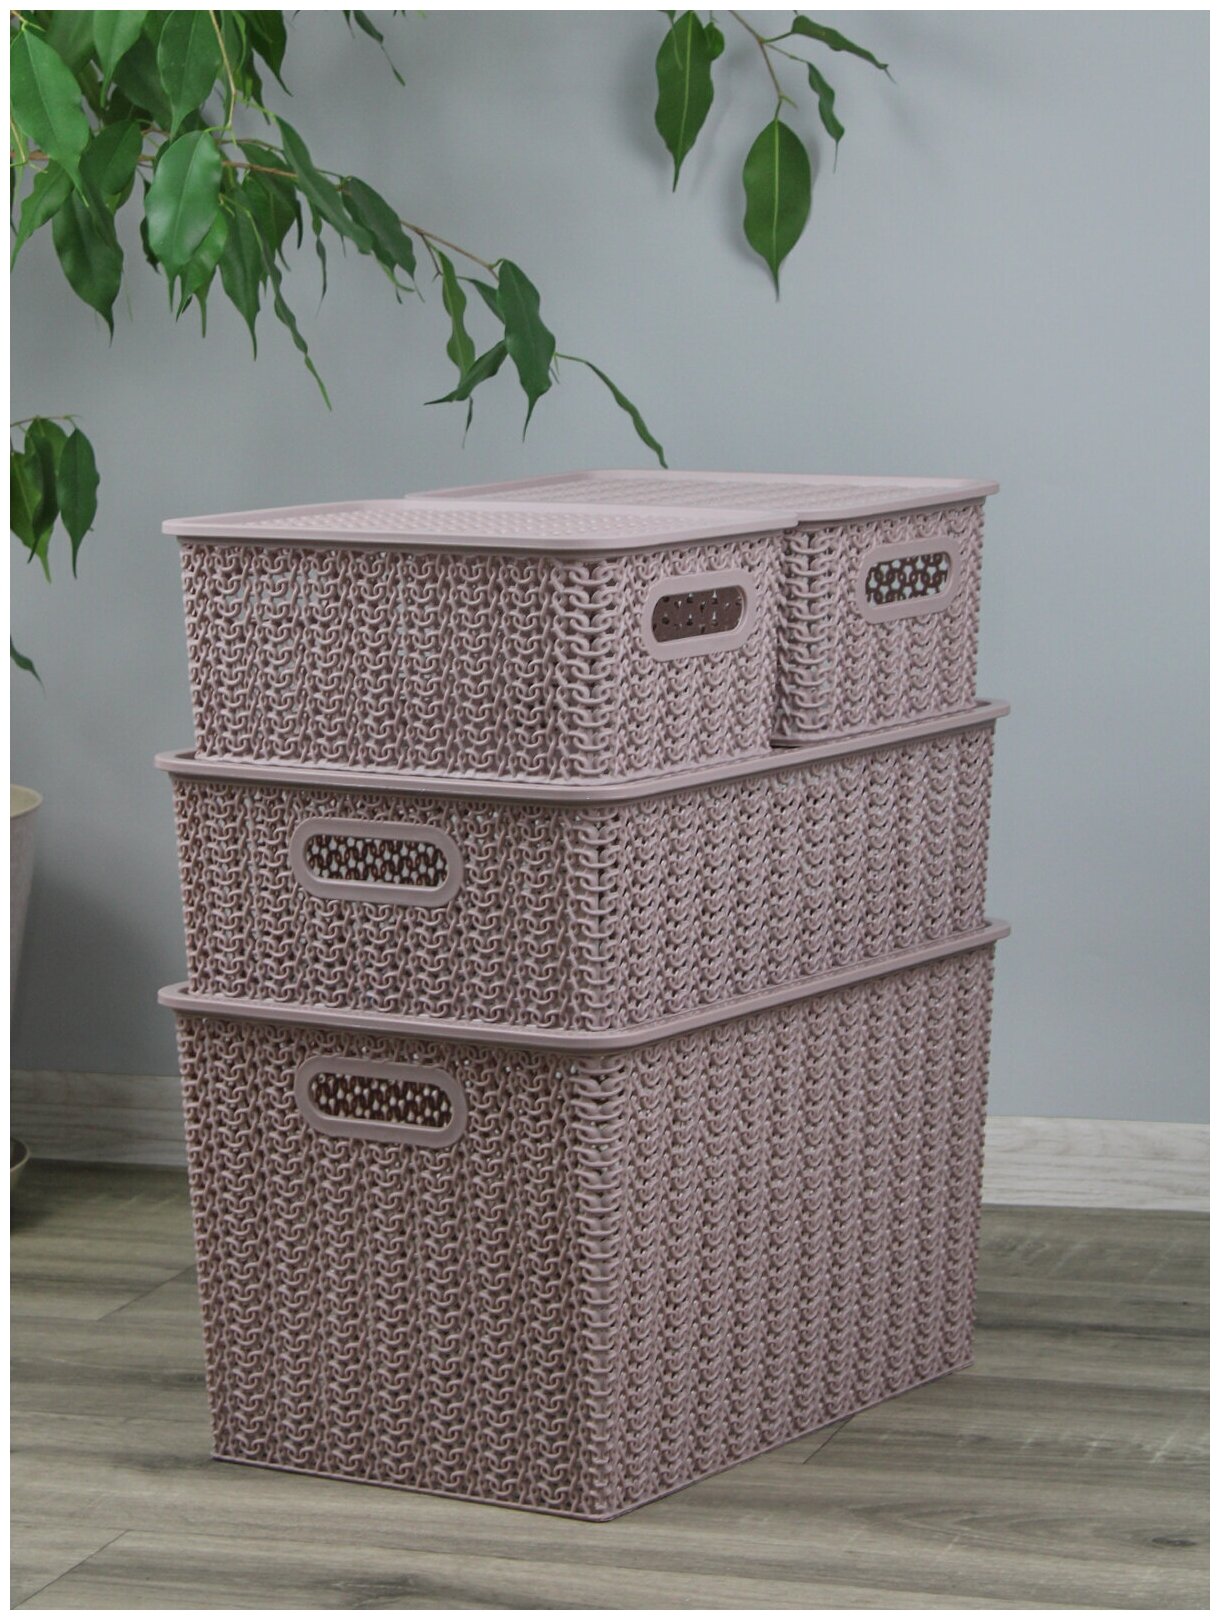 Набор из 4 корзин для хранения Вязь с крышкой 14л - 1 шт, 7,5л - 1 шт, 3л - 2 шт / контейнер / хозяйственная коробка, цвет розовый нюд